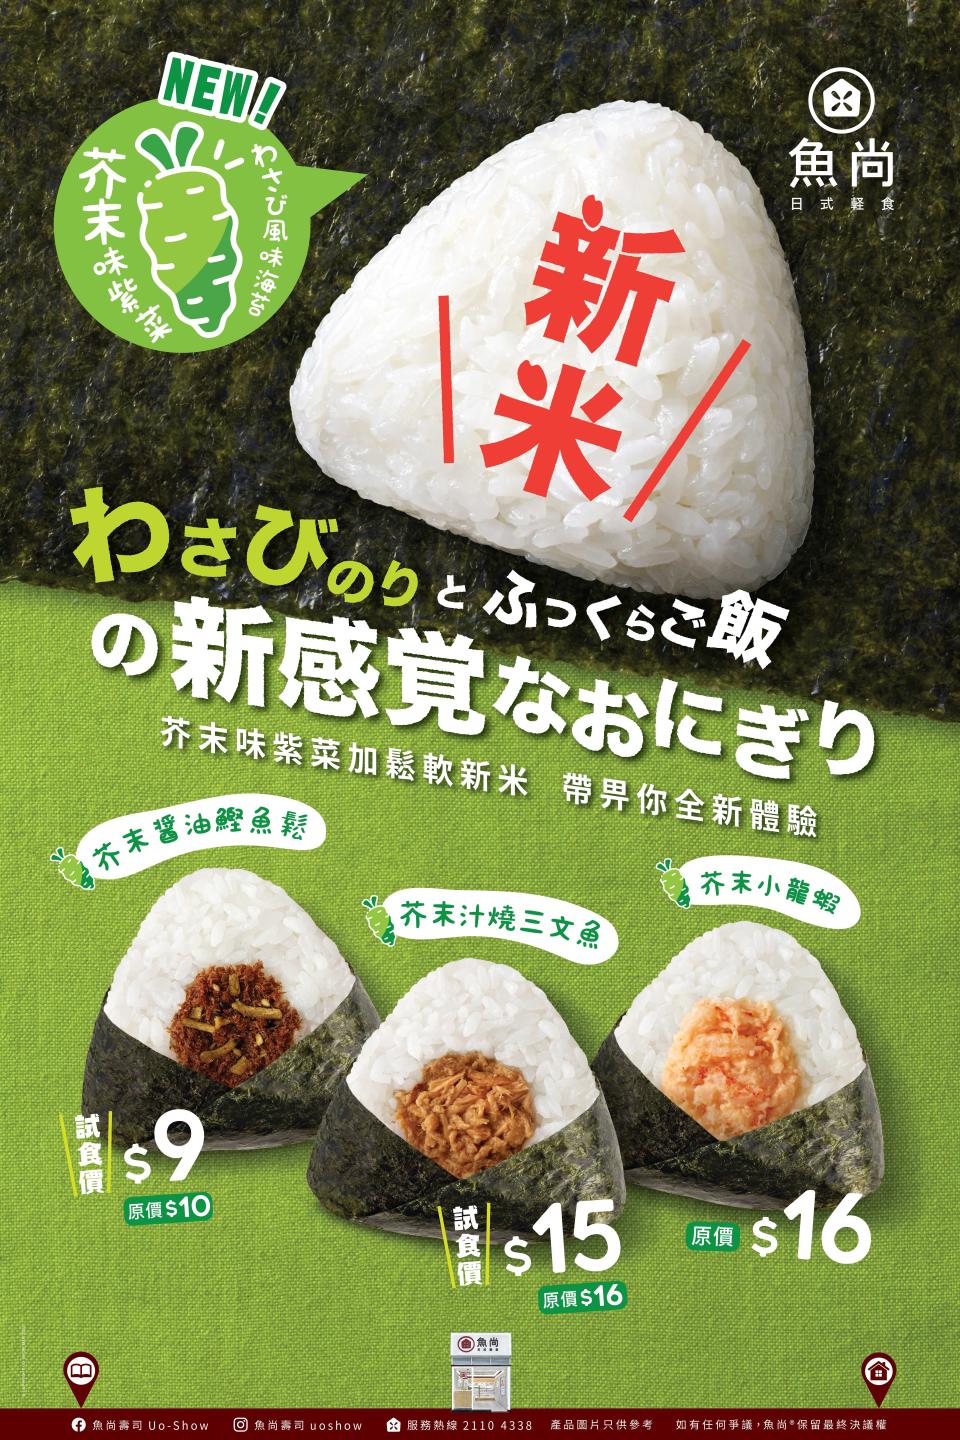 魚尚精心嚴選兩款不同種類的日本米，包括備受好評的富山縣產越光米及擁有超高人氣的北海道七星米，融合兩款米的優點，以各一半的完美配方比例製作一系列飯糰。